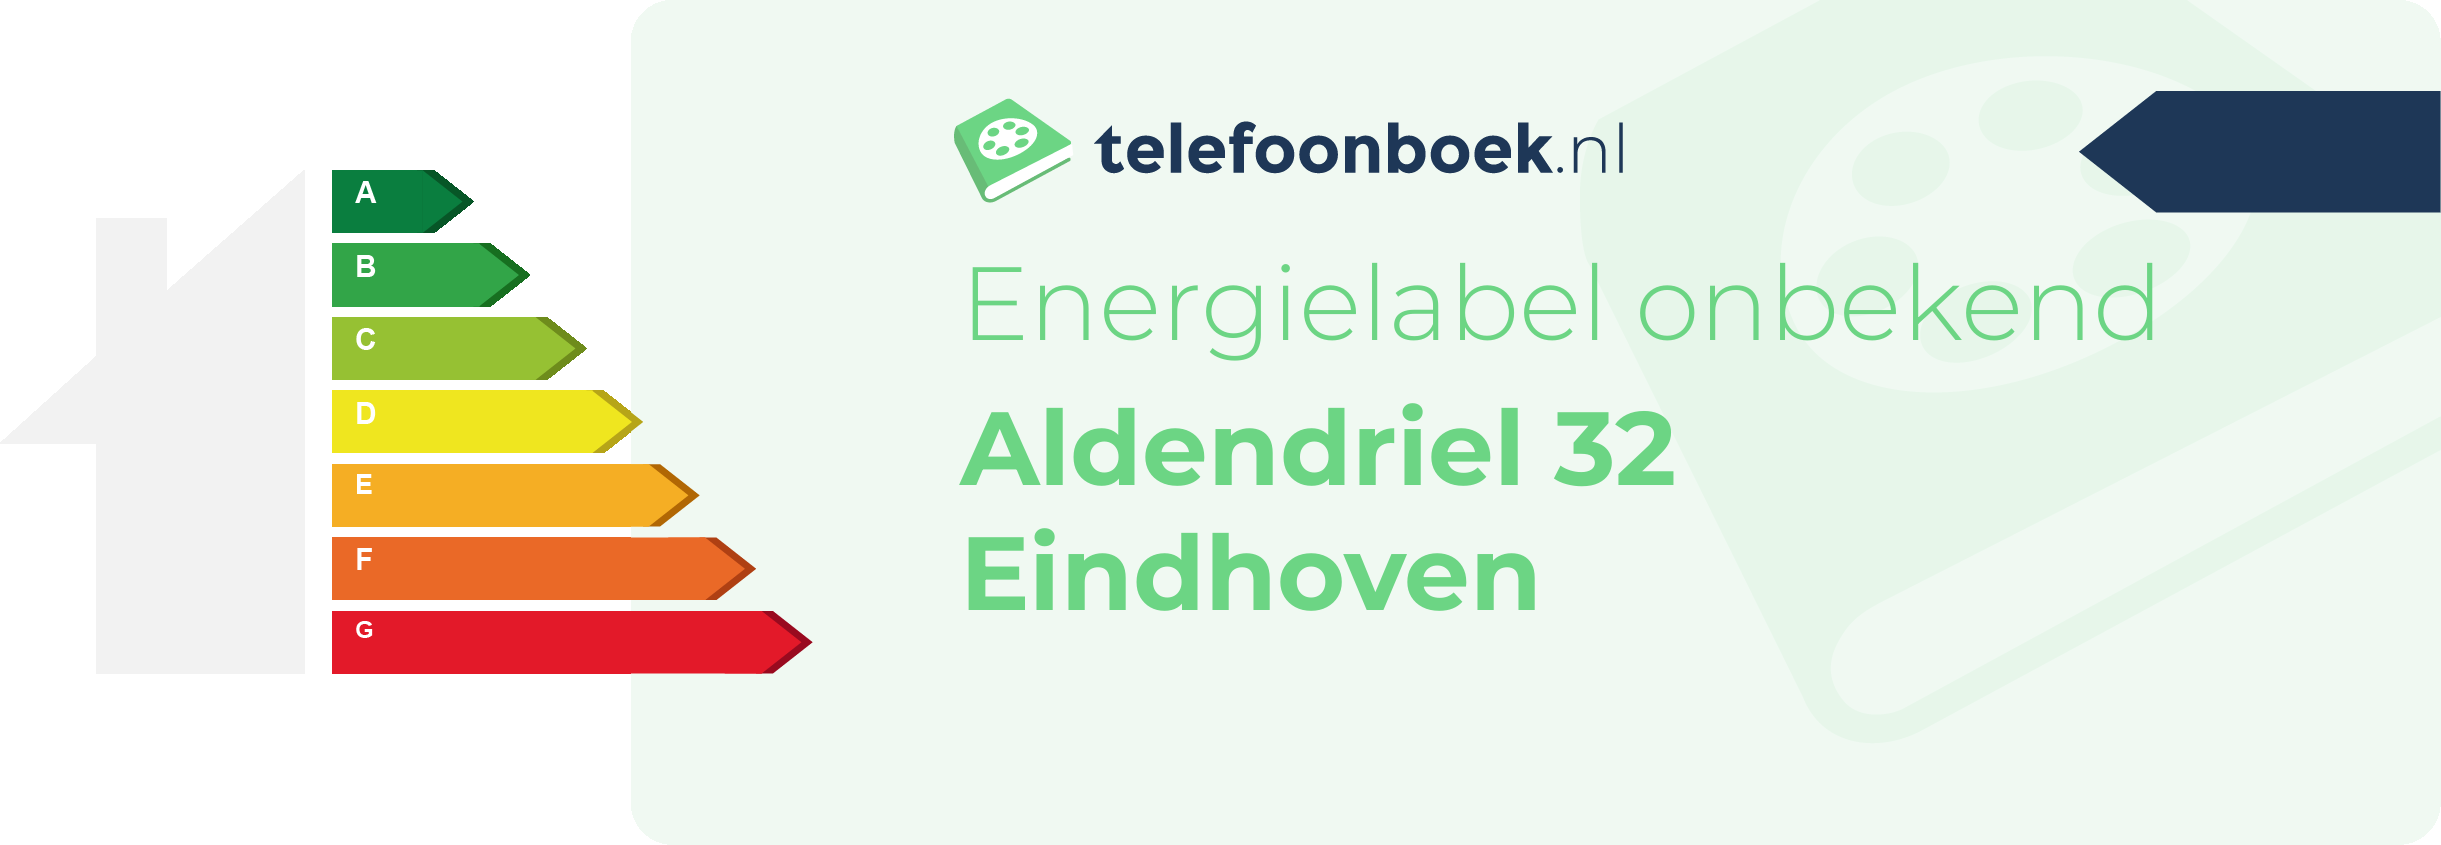 Energielabel Aldendriel 32 Eindhoven